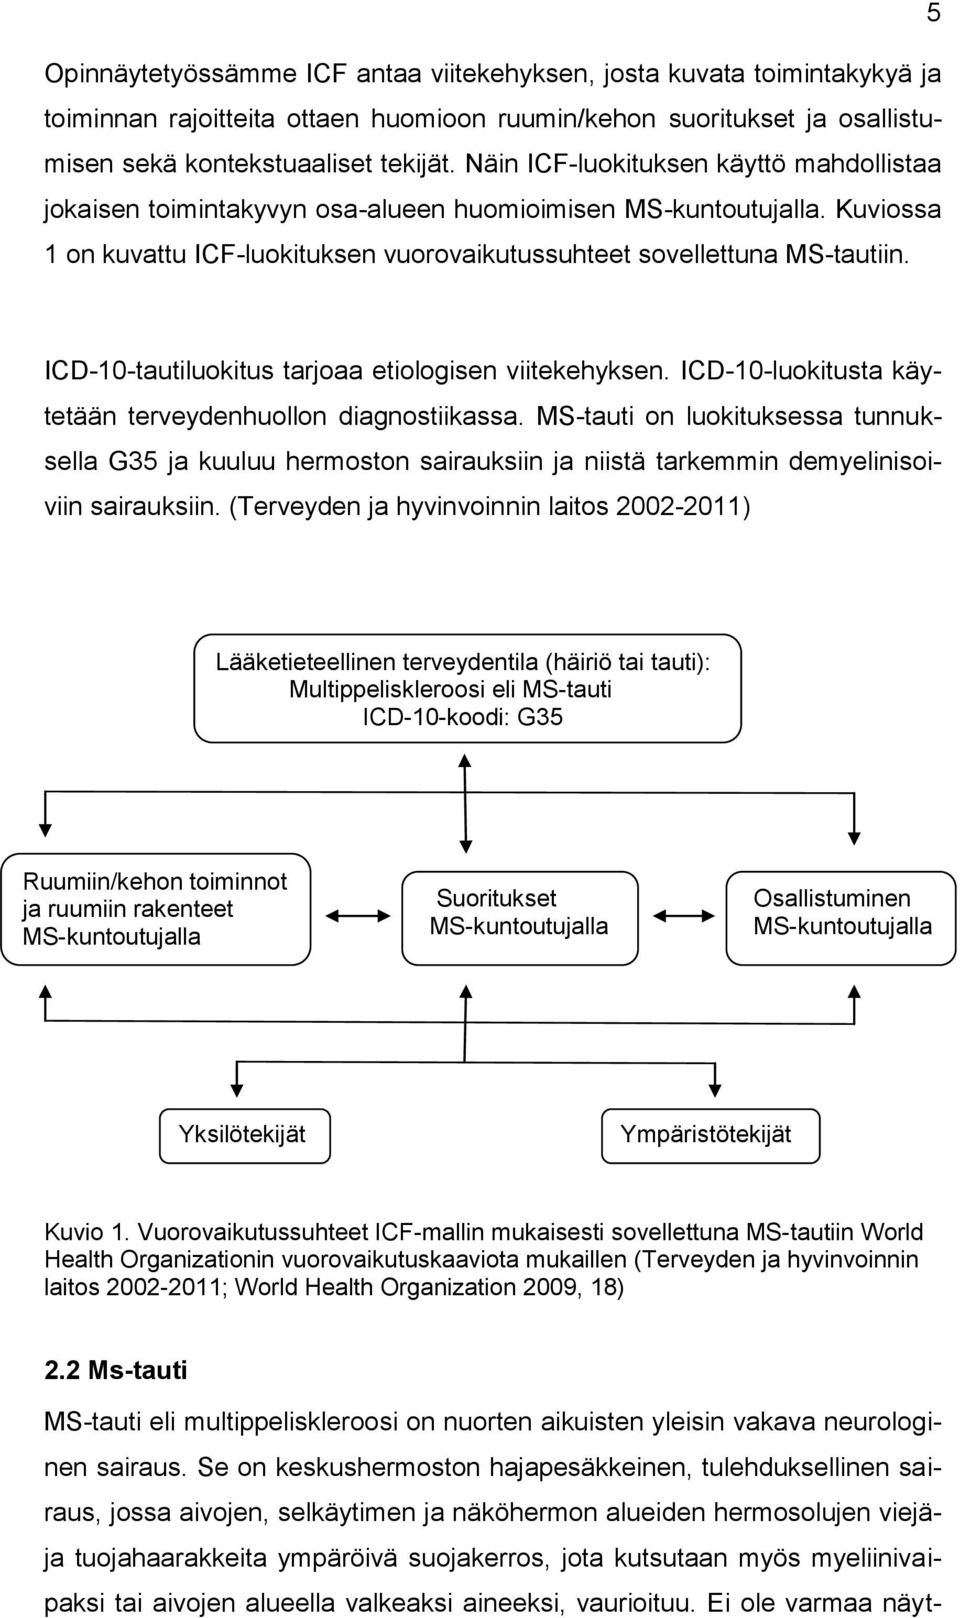 ICD-10-tautiluokitus tarjoaa etiologisen viitekehyksen. ICD-10-luokitusta käytetään terveydenhuollon diagnostiikassa.